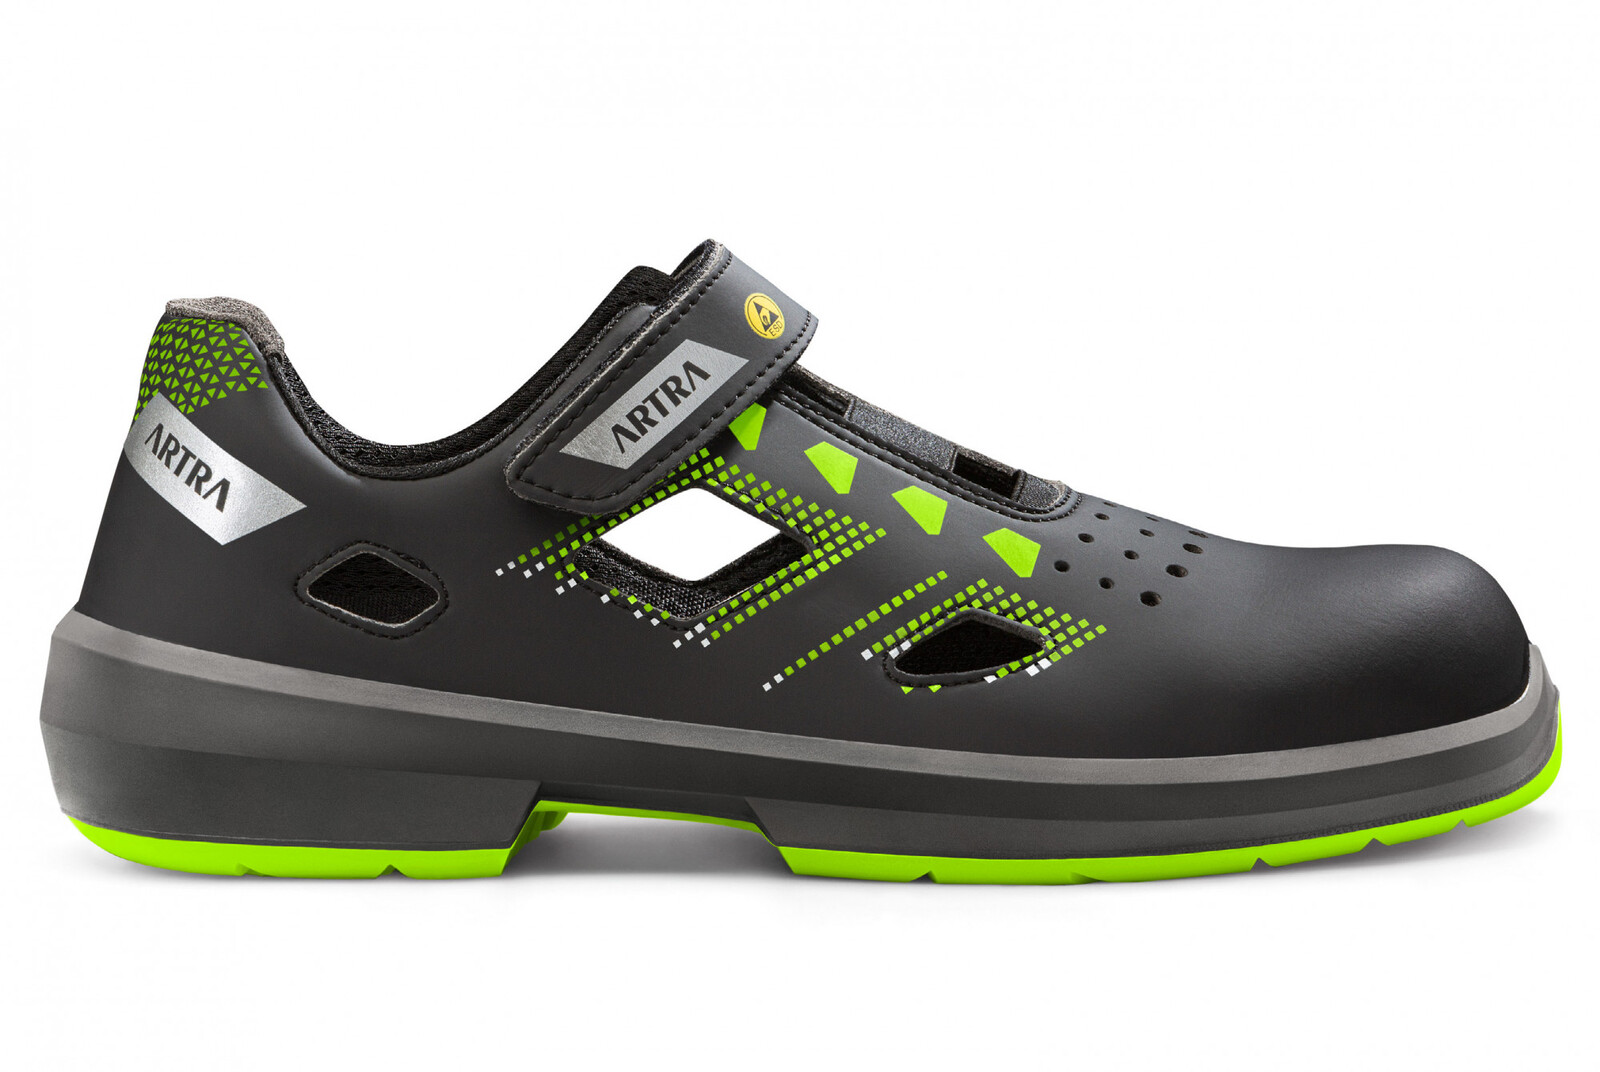 Bezpečnostné sandále Artra Arzo 805 678080 S1 SRC ESD MF - veľkosť: 47, farba: čierna/zelená